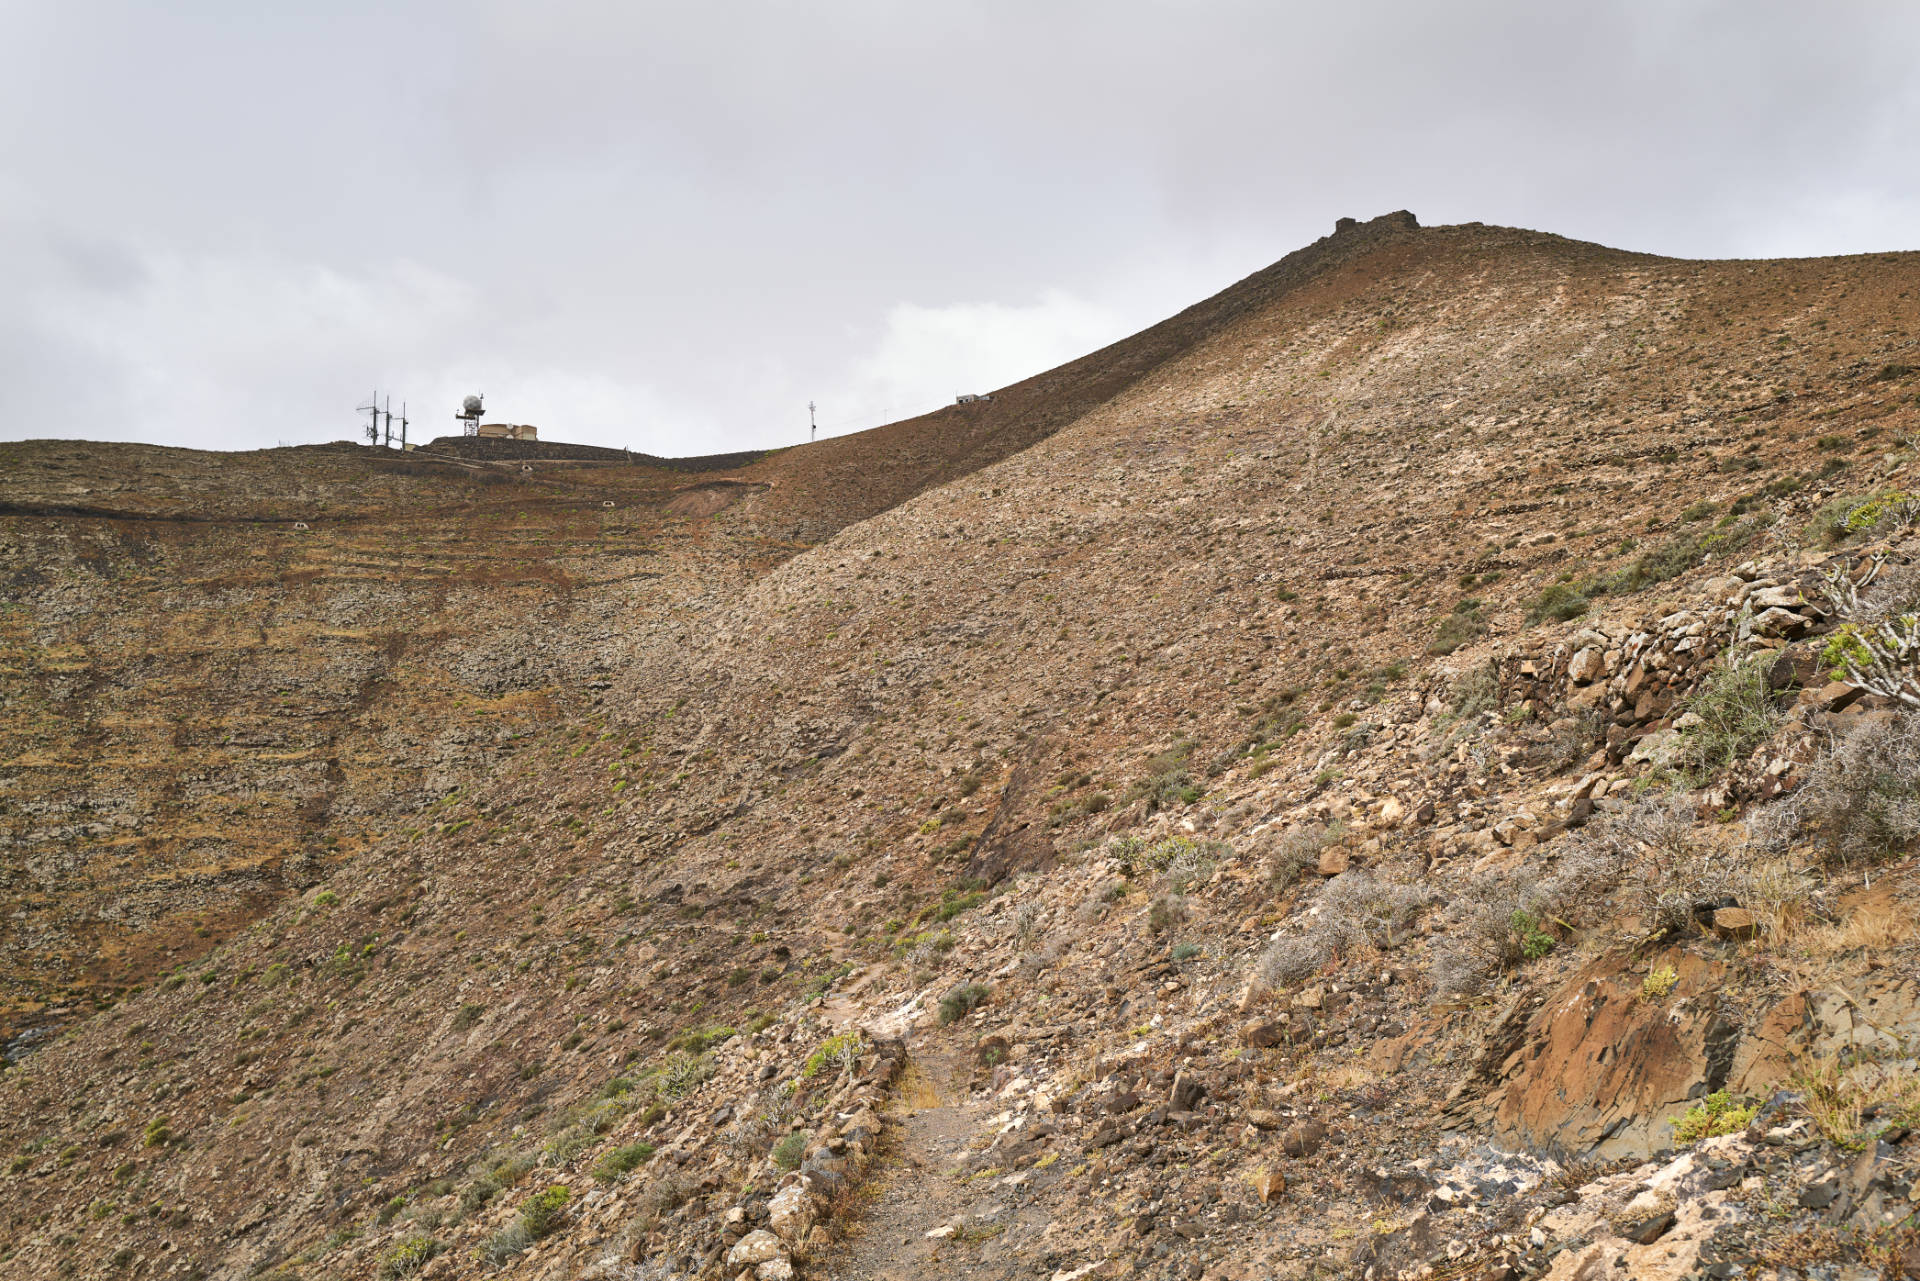 Blick auf die Radarstation und den Gipfel des Montaña de la Muda (691m).